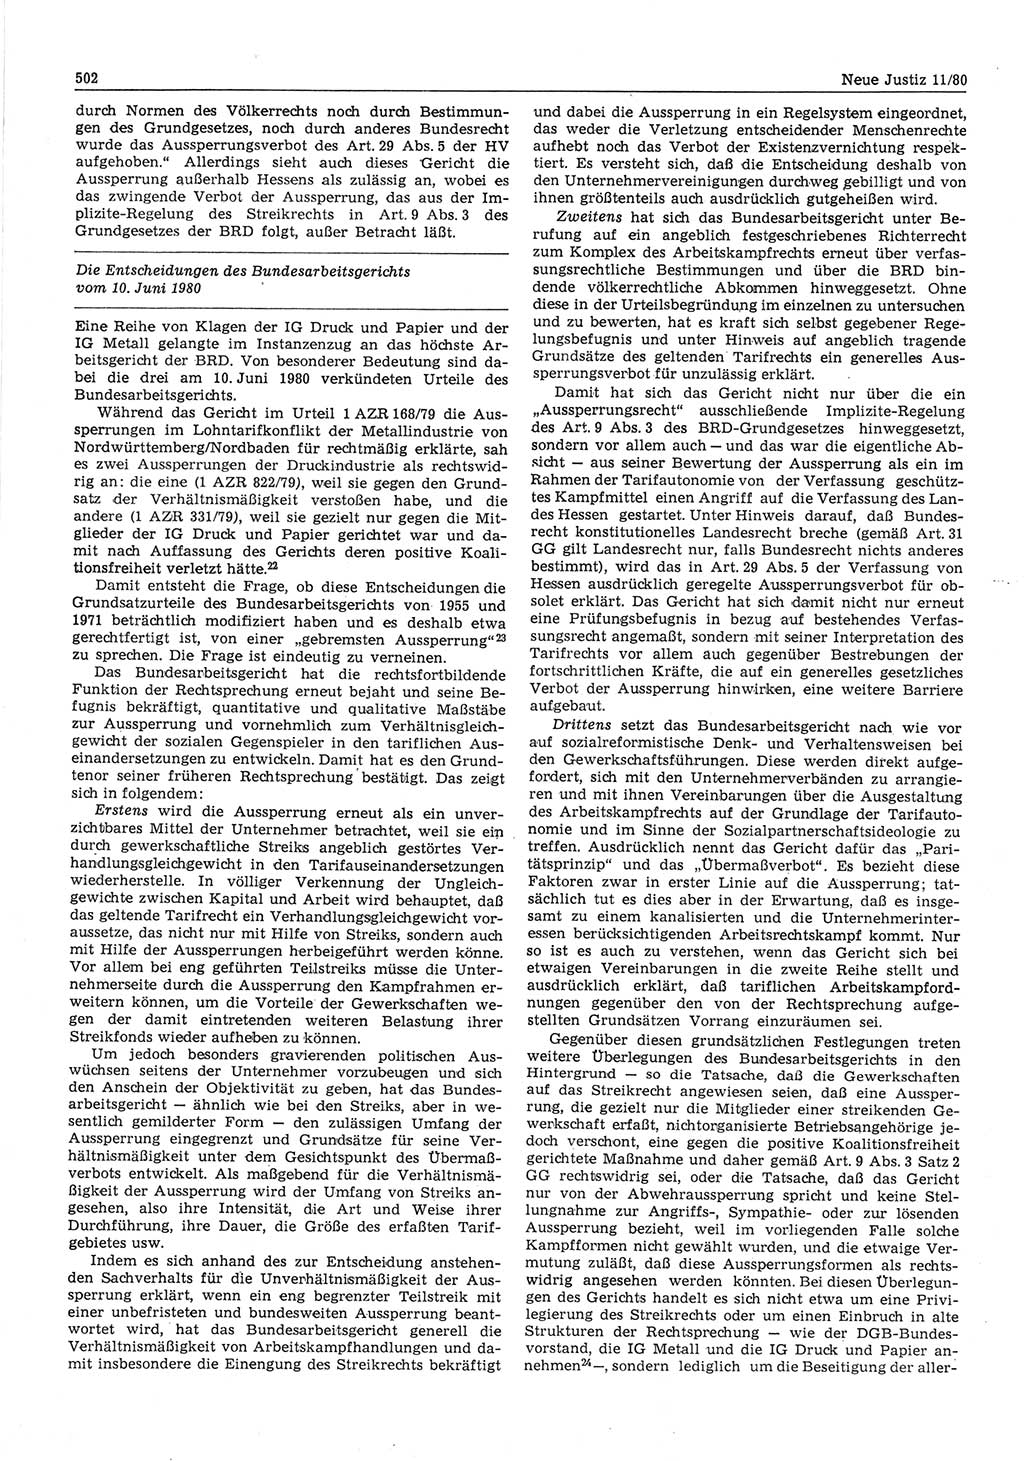 Neue Justiz (NJ), Zeitschrift für sozialistisches Recht und Gesetzlichkeit [Deutsche Demokratische Republik (DDR)], 34. Jahrgang 1980, Seite 502 (NJ DDR 1980, S. 502)